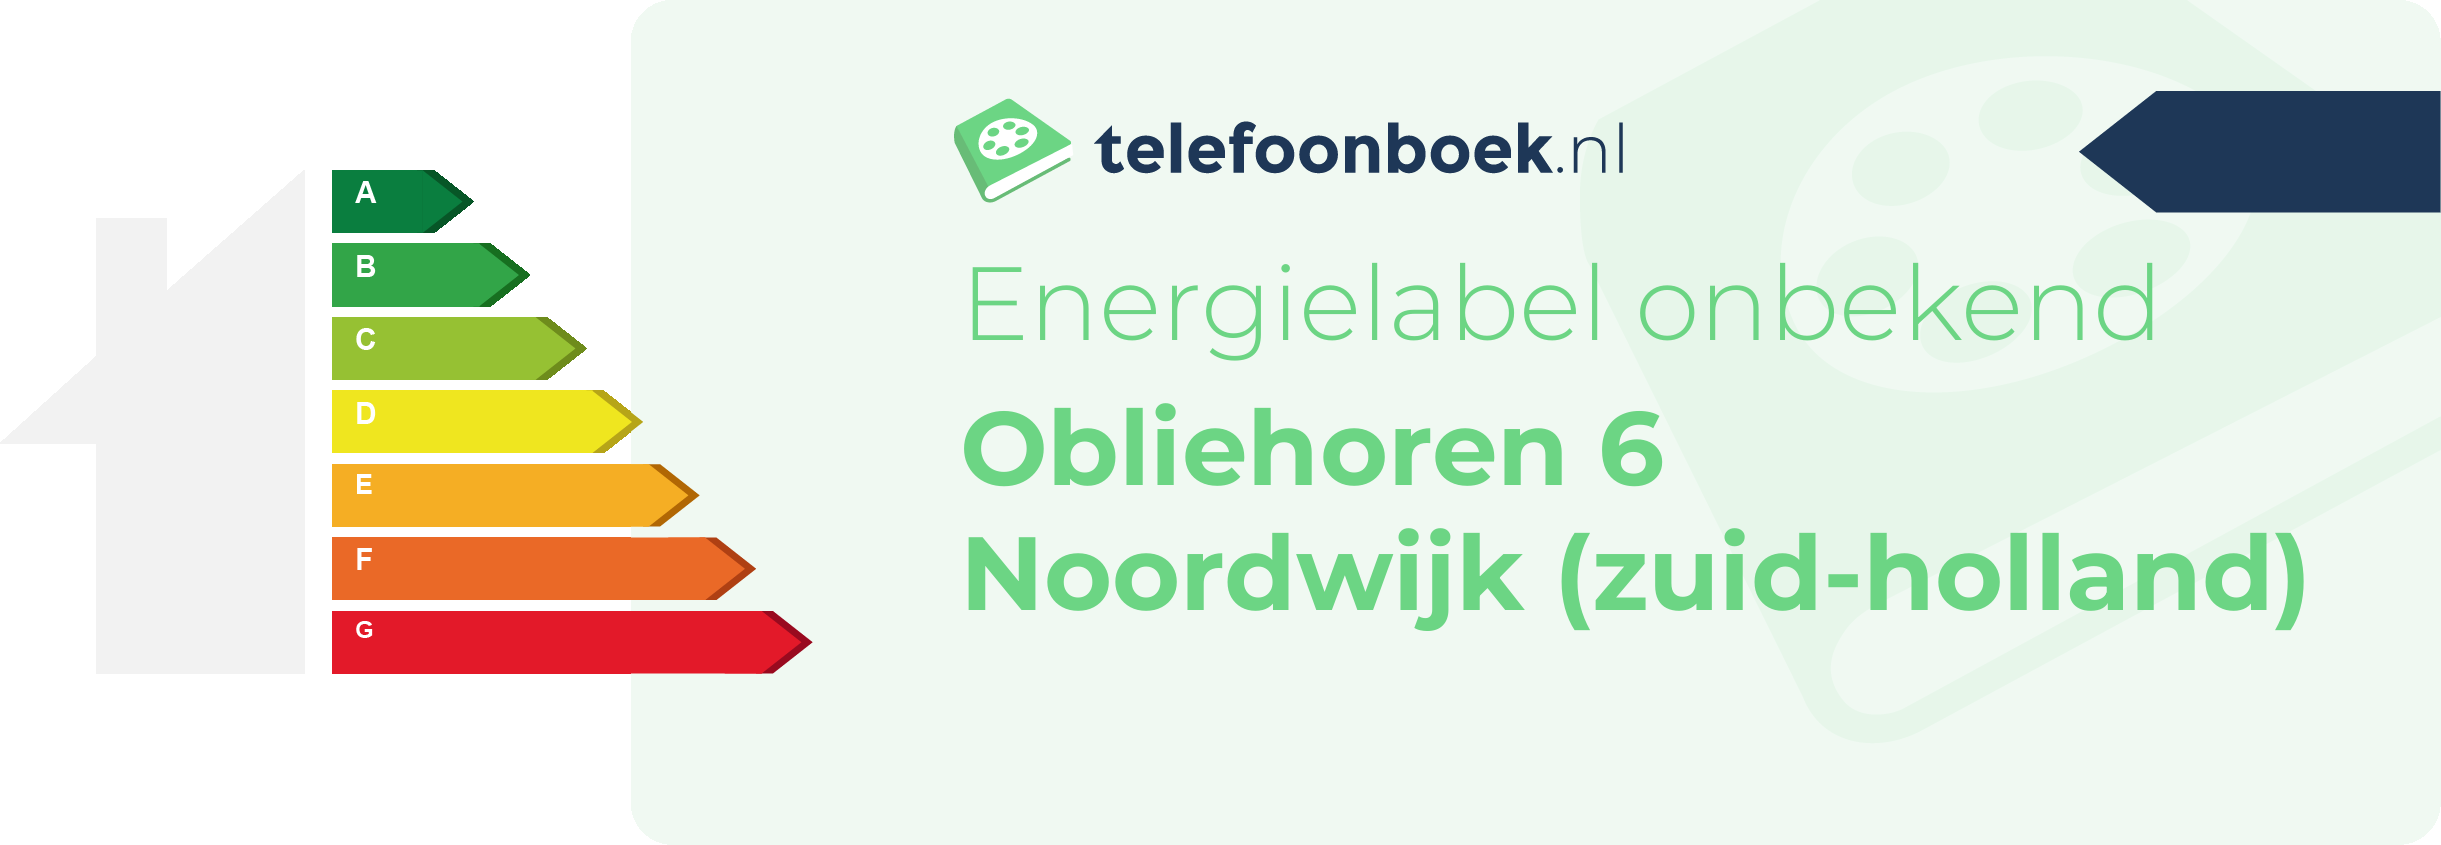 Energielabel Obliehoren 6 Noordwijk (Zuid-Holland)